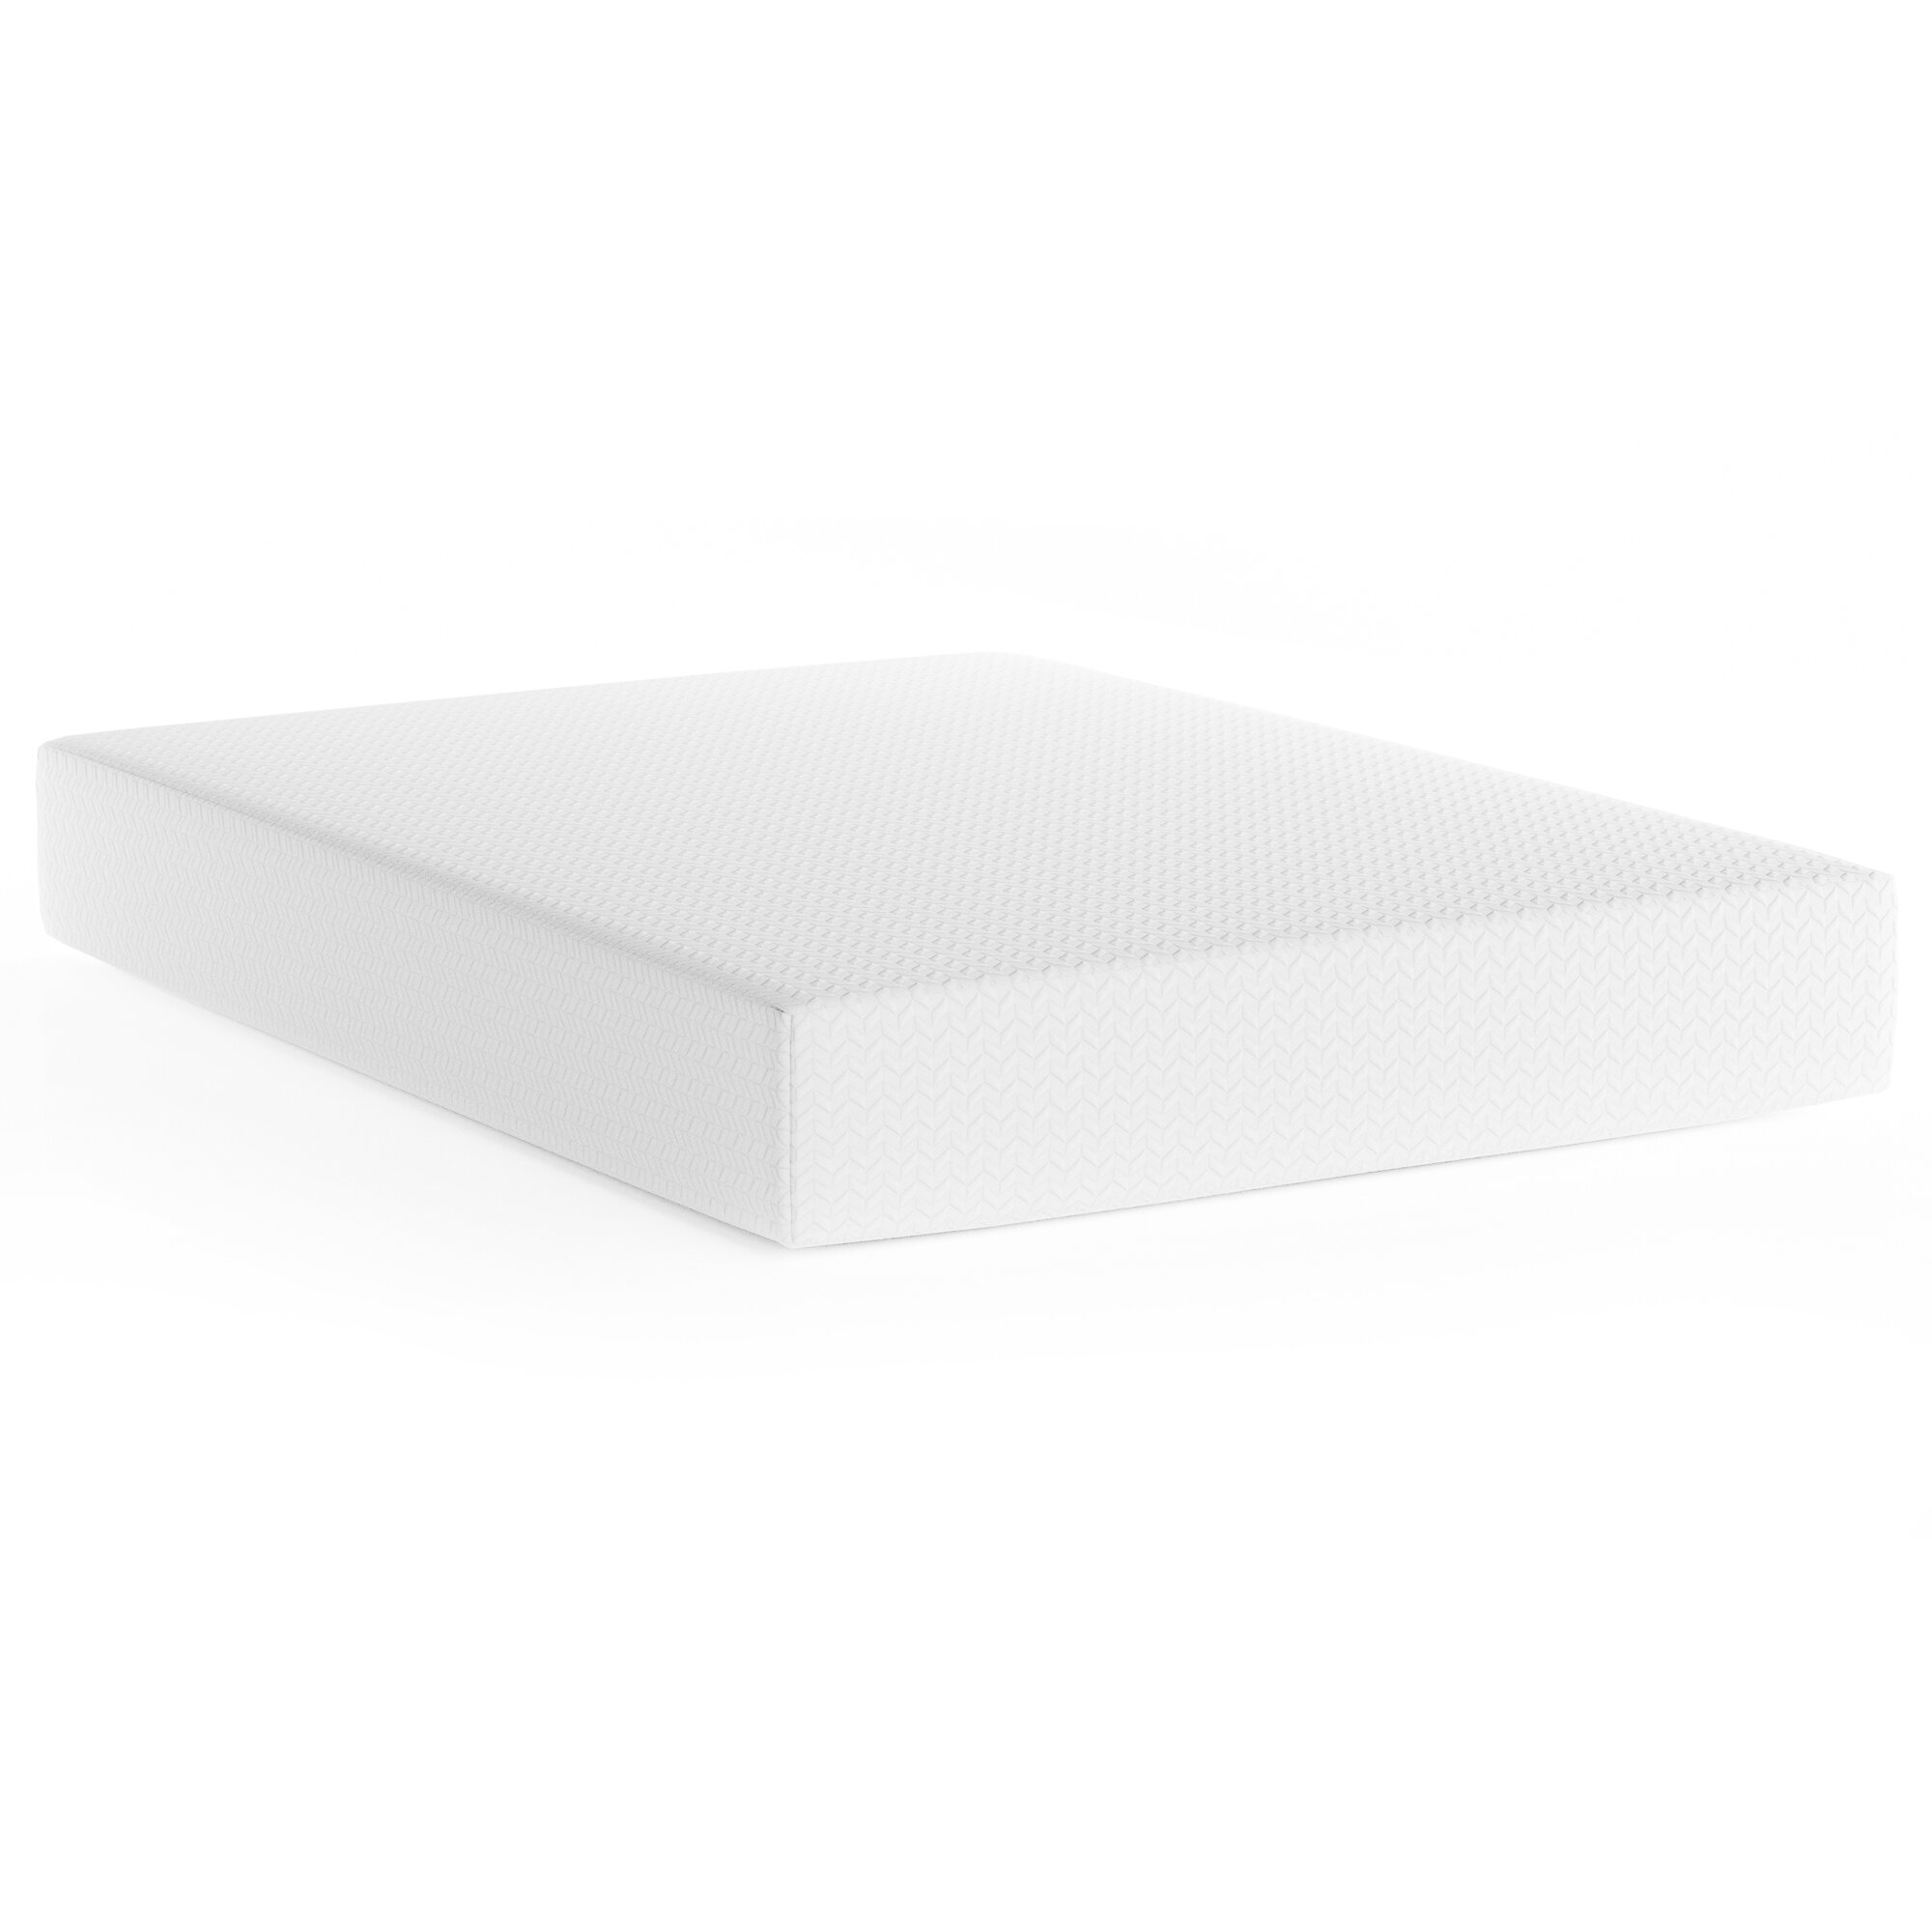 Wayfair Sleep™ 13.5'' Medium Cooling Gel Memory Foam Mattress & Reviews